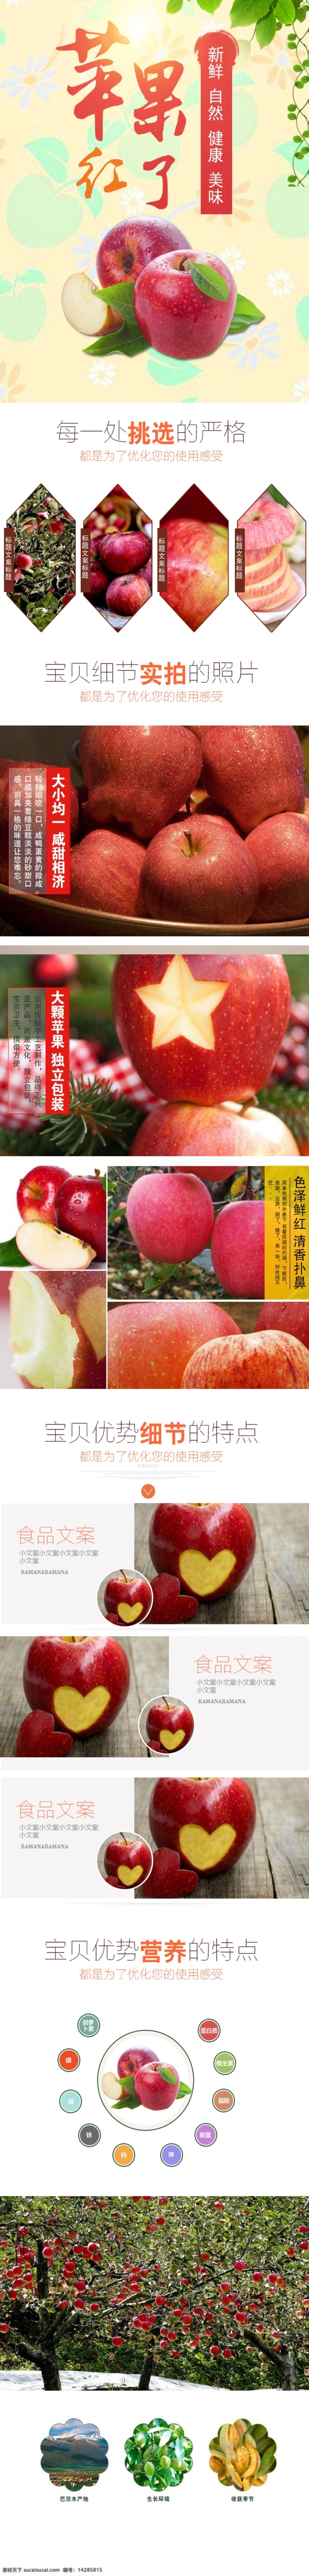 苹果 水果 红苹果 电商 淘宝 详情 页 描述 模板 大苹果 苹果汁 青苹果 新鲜苹果 原生态水果